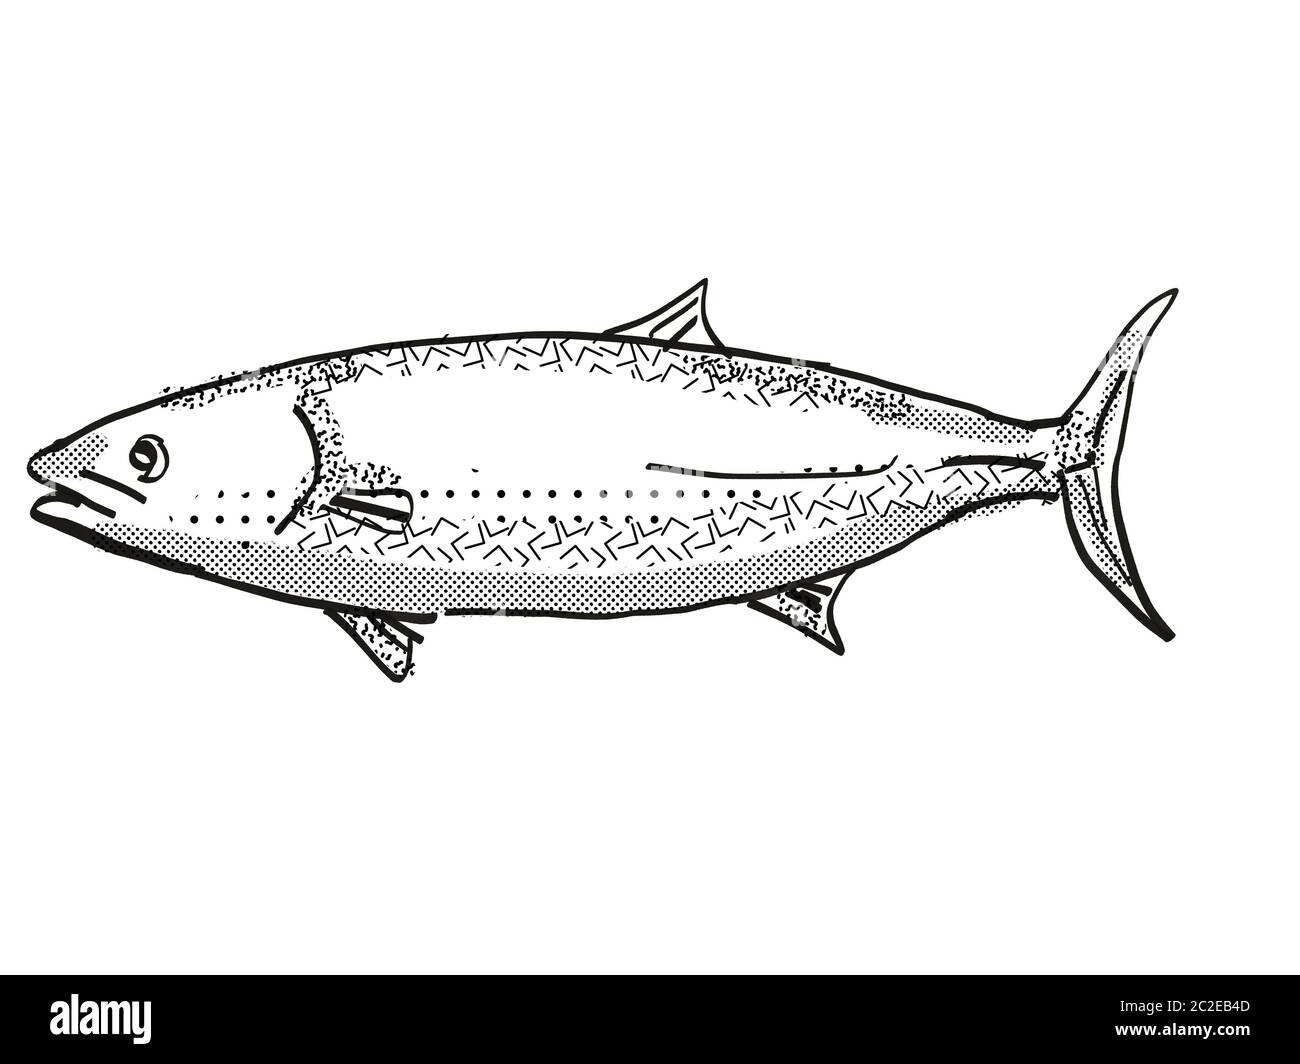 Retro cartoon style dessin d'un thazard, originaire de la Nouvelle-Zélande la vie marine vu de côté des espèces isolées sur fond blanc en noir et blanc Banque D'Images